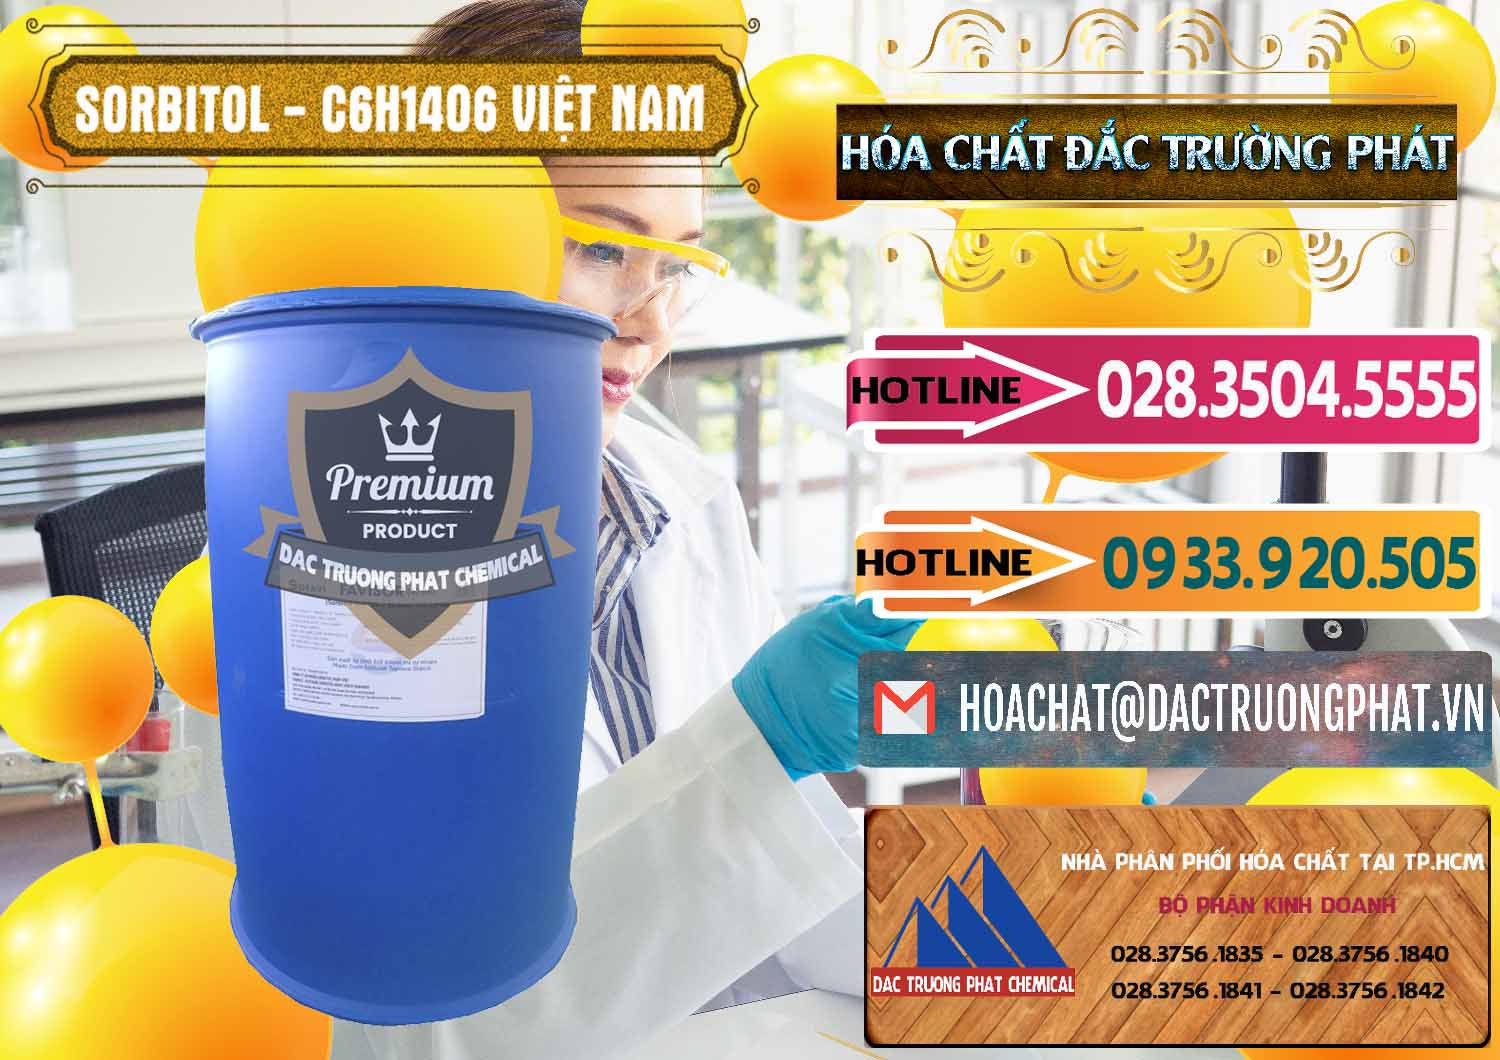 Kinh doanh - phân phối Sorbitol - C6H14O6 Lỏng 70% Food Grade Việt Nam - 0438 - Đơn vị kinh doanh ( bán ) hóa chất tại TP.HCM - dactruongphat.vn